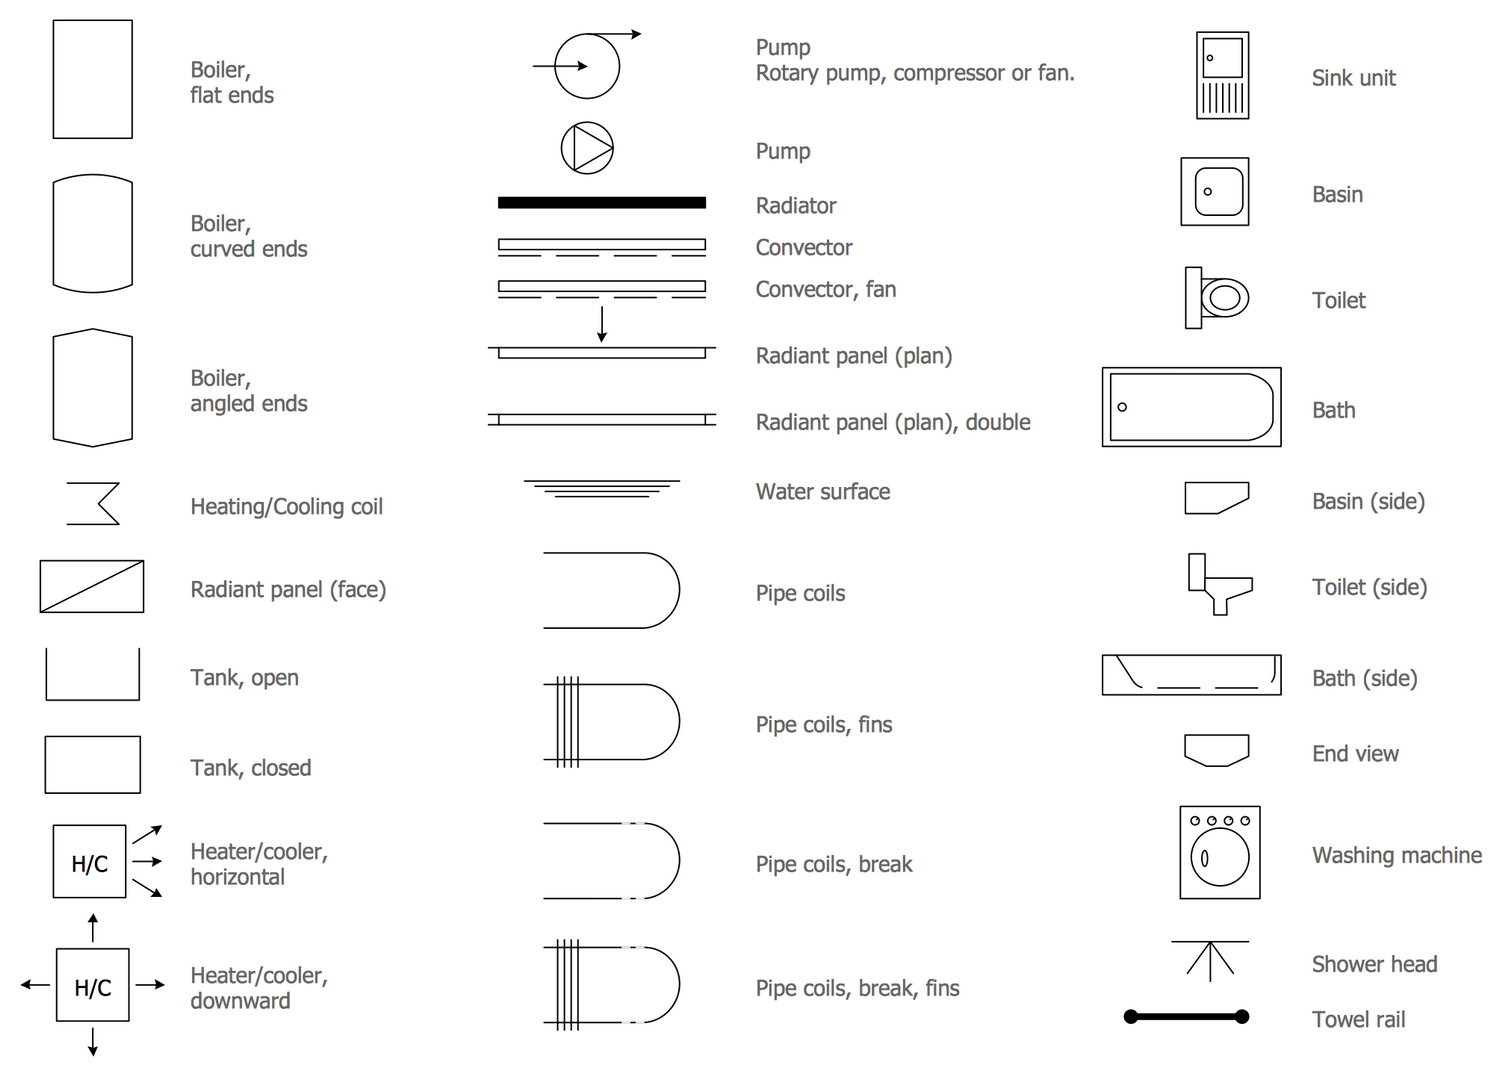 Piping Isometric Drawing Symbols Pdf at Explore